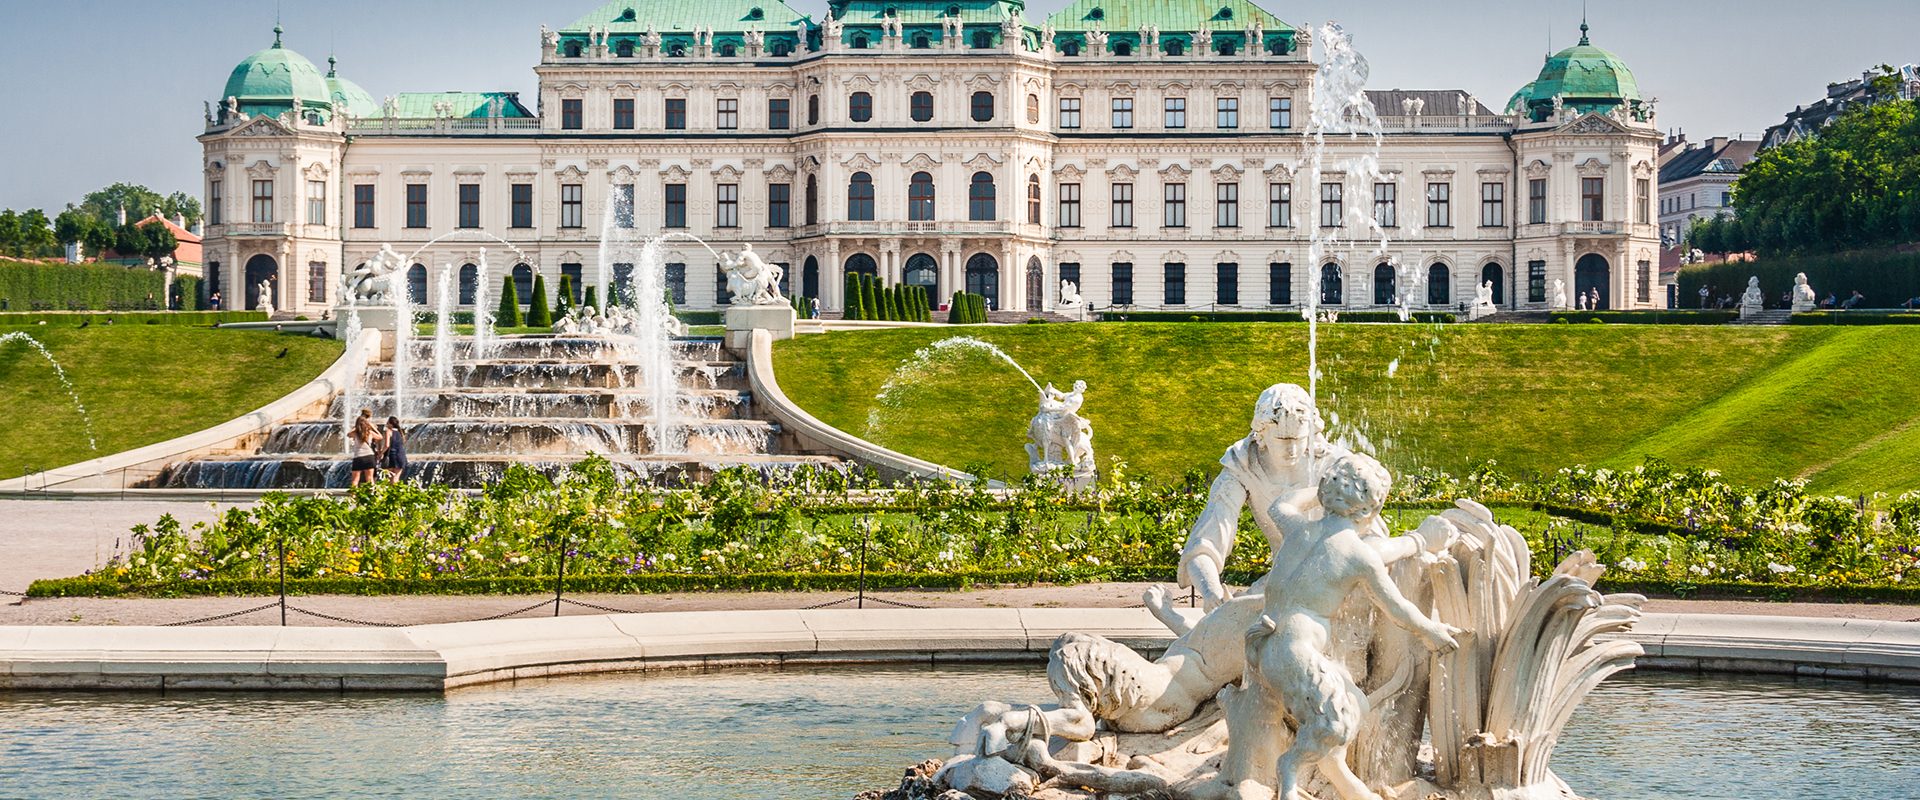 Εκδρομή στη Βιέννη | Παλάτι Schönbrunn | Οργανωμένες εκδρομές με γκρουπ | Ταξιδιωτικό γραφείο Prima Holidays